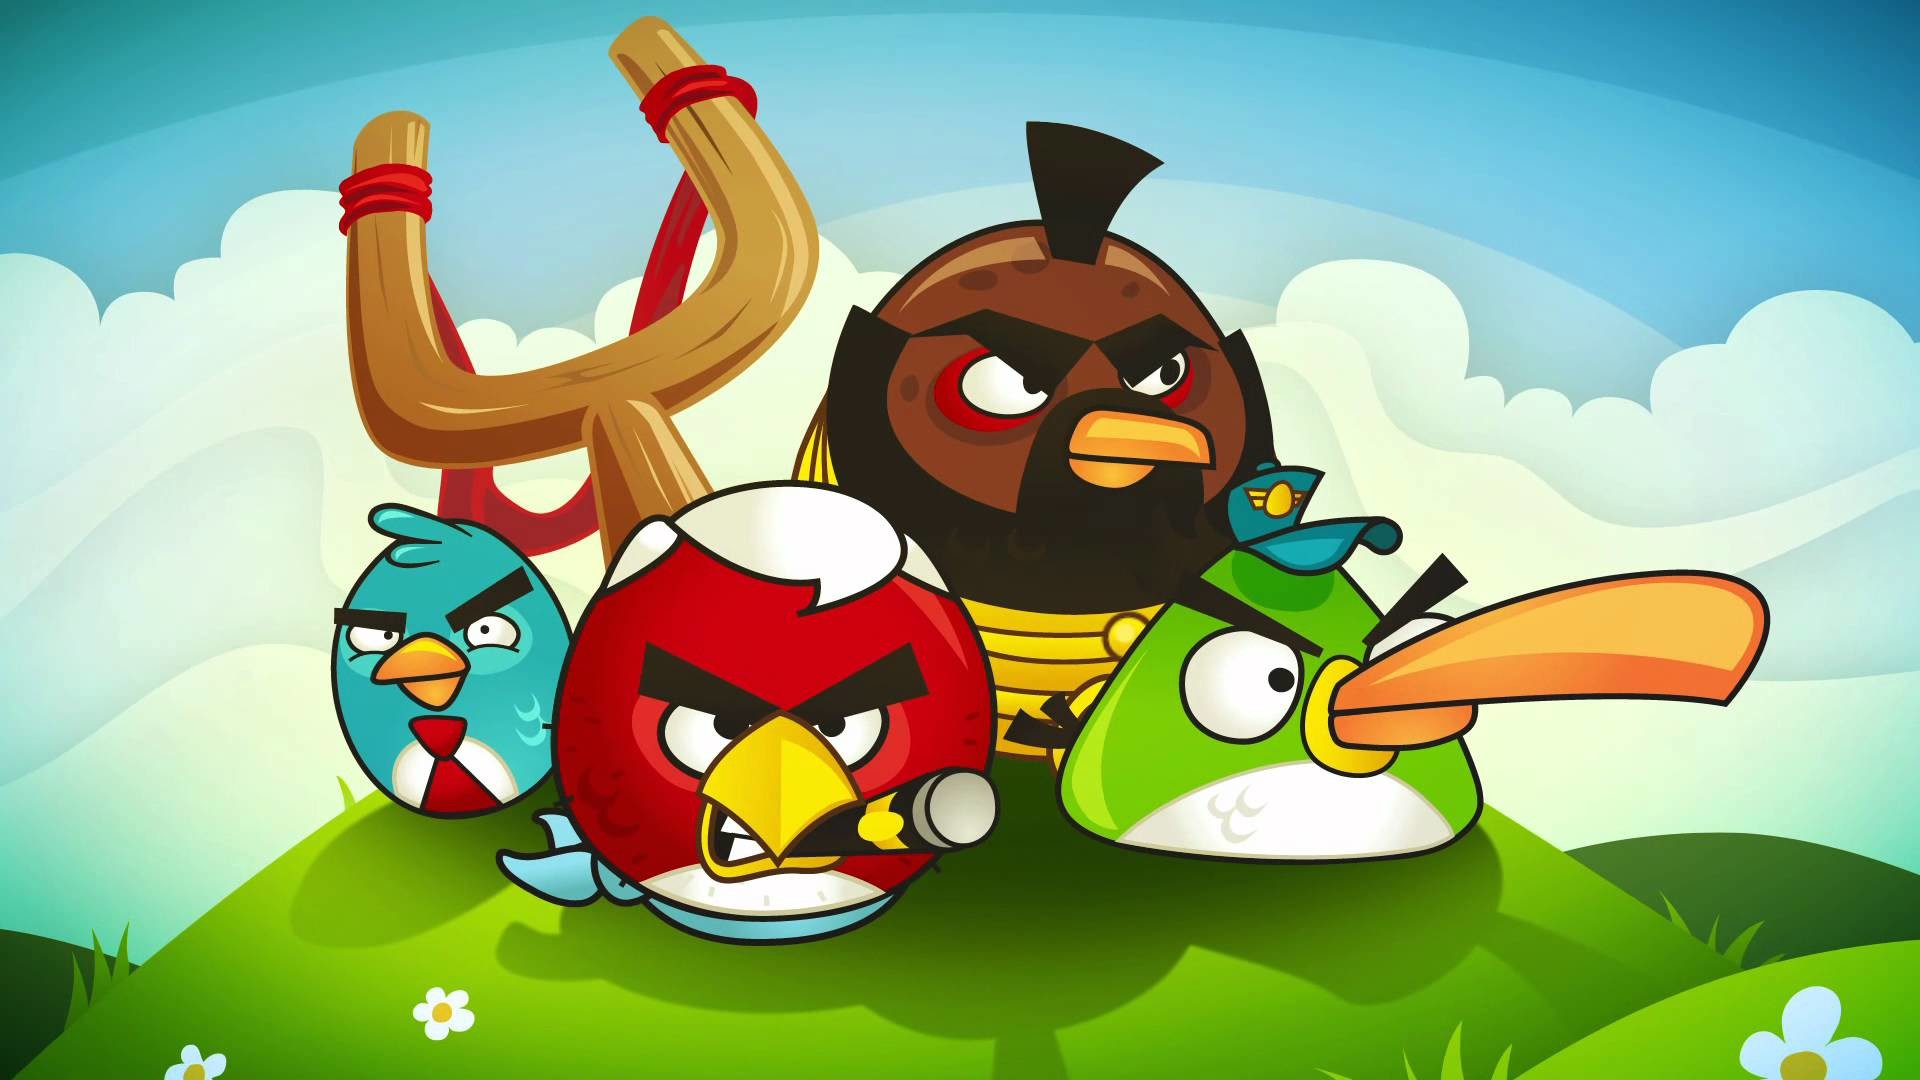 Angry birds 1.5 2. Энгри бердз злые птички. Игра Энгри бердз 2 злые птицы. Angry Birds 2 игра птички. Ангрибёрдс злые птенчики.